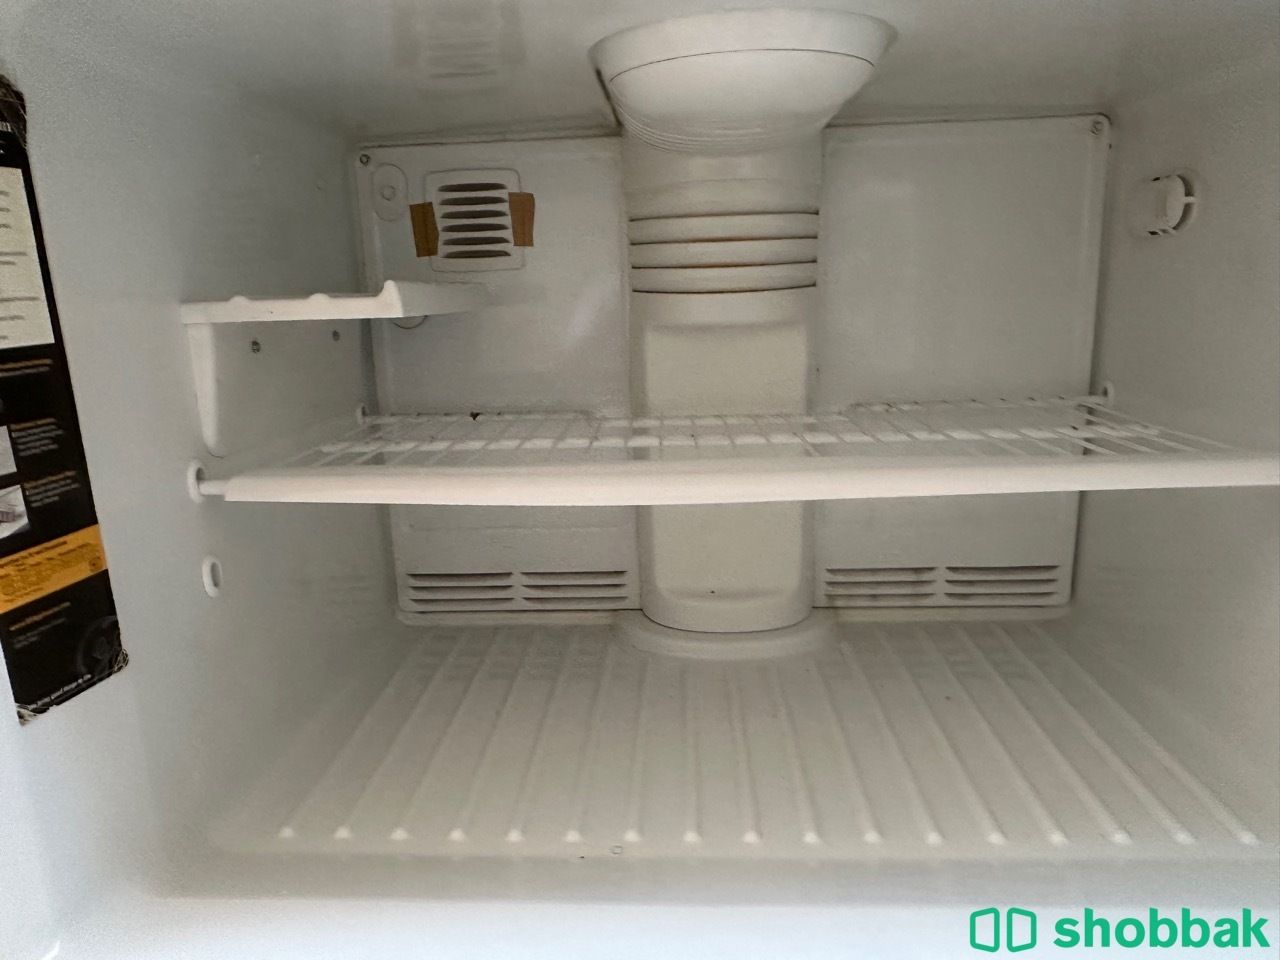 للبيع ثلاجه كبيره GE Refrigerator Shobbak Saudi Arabia